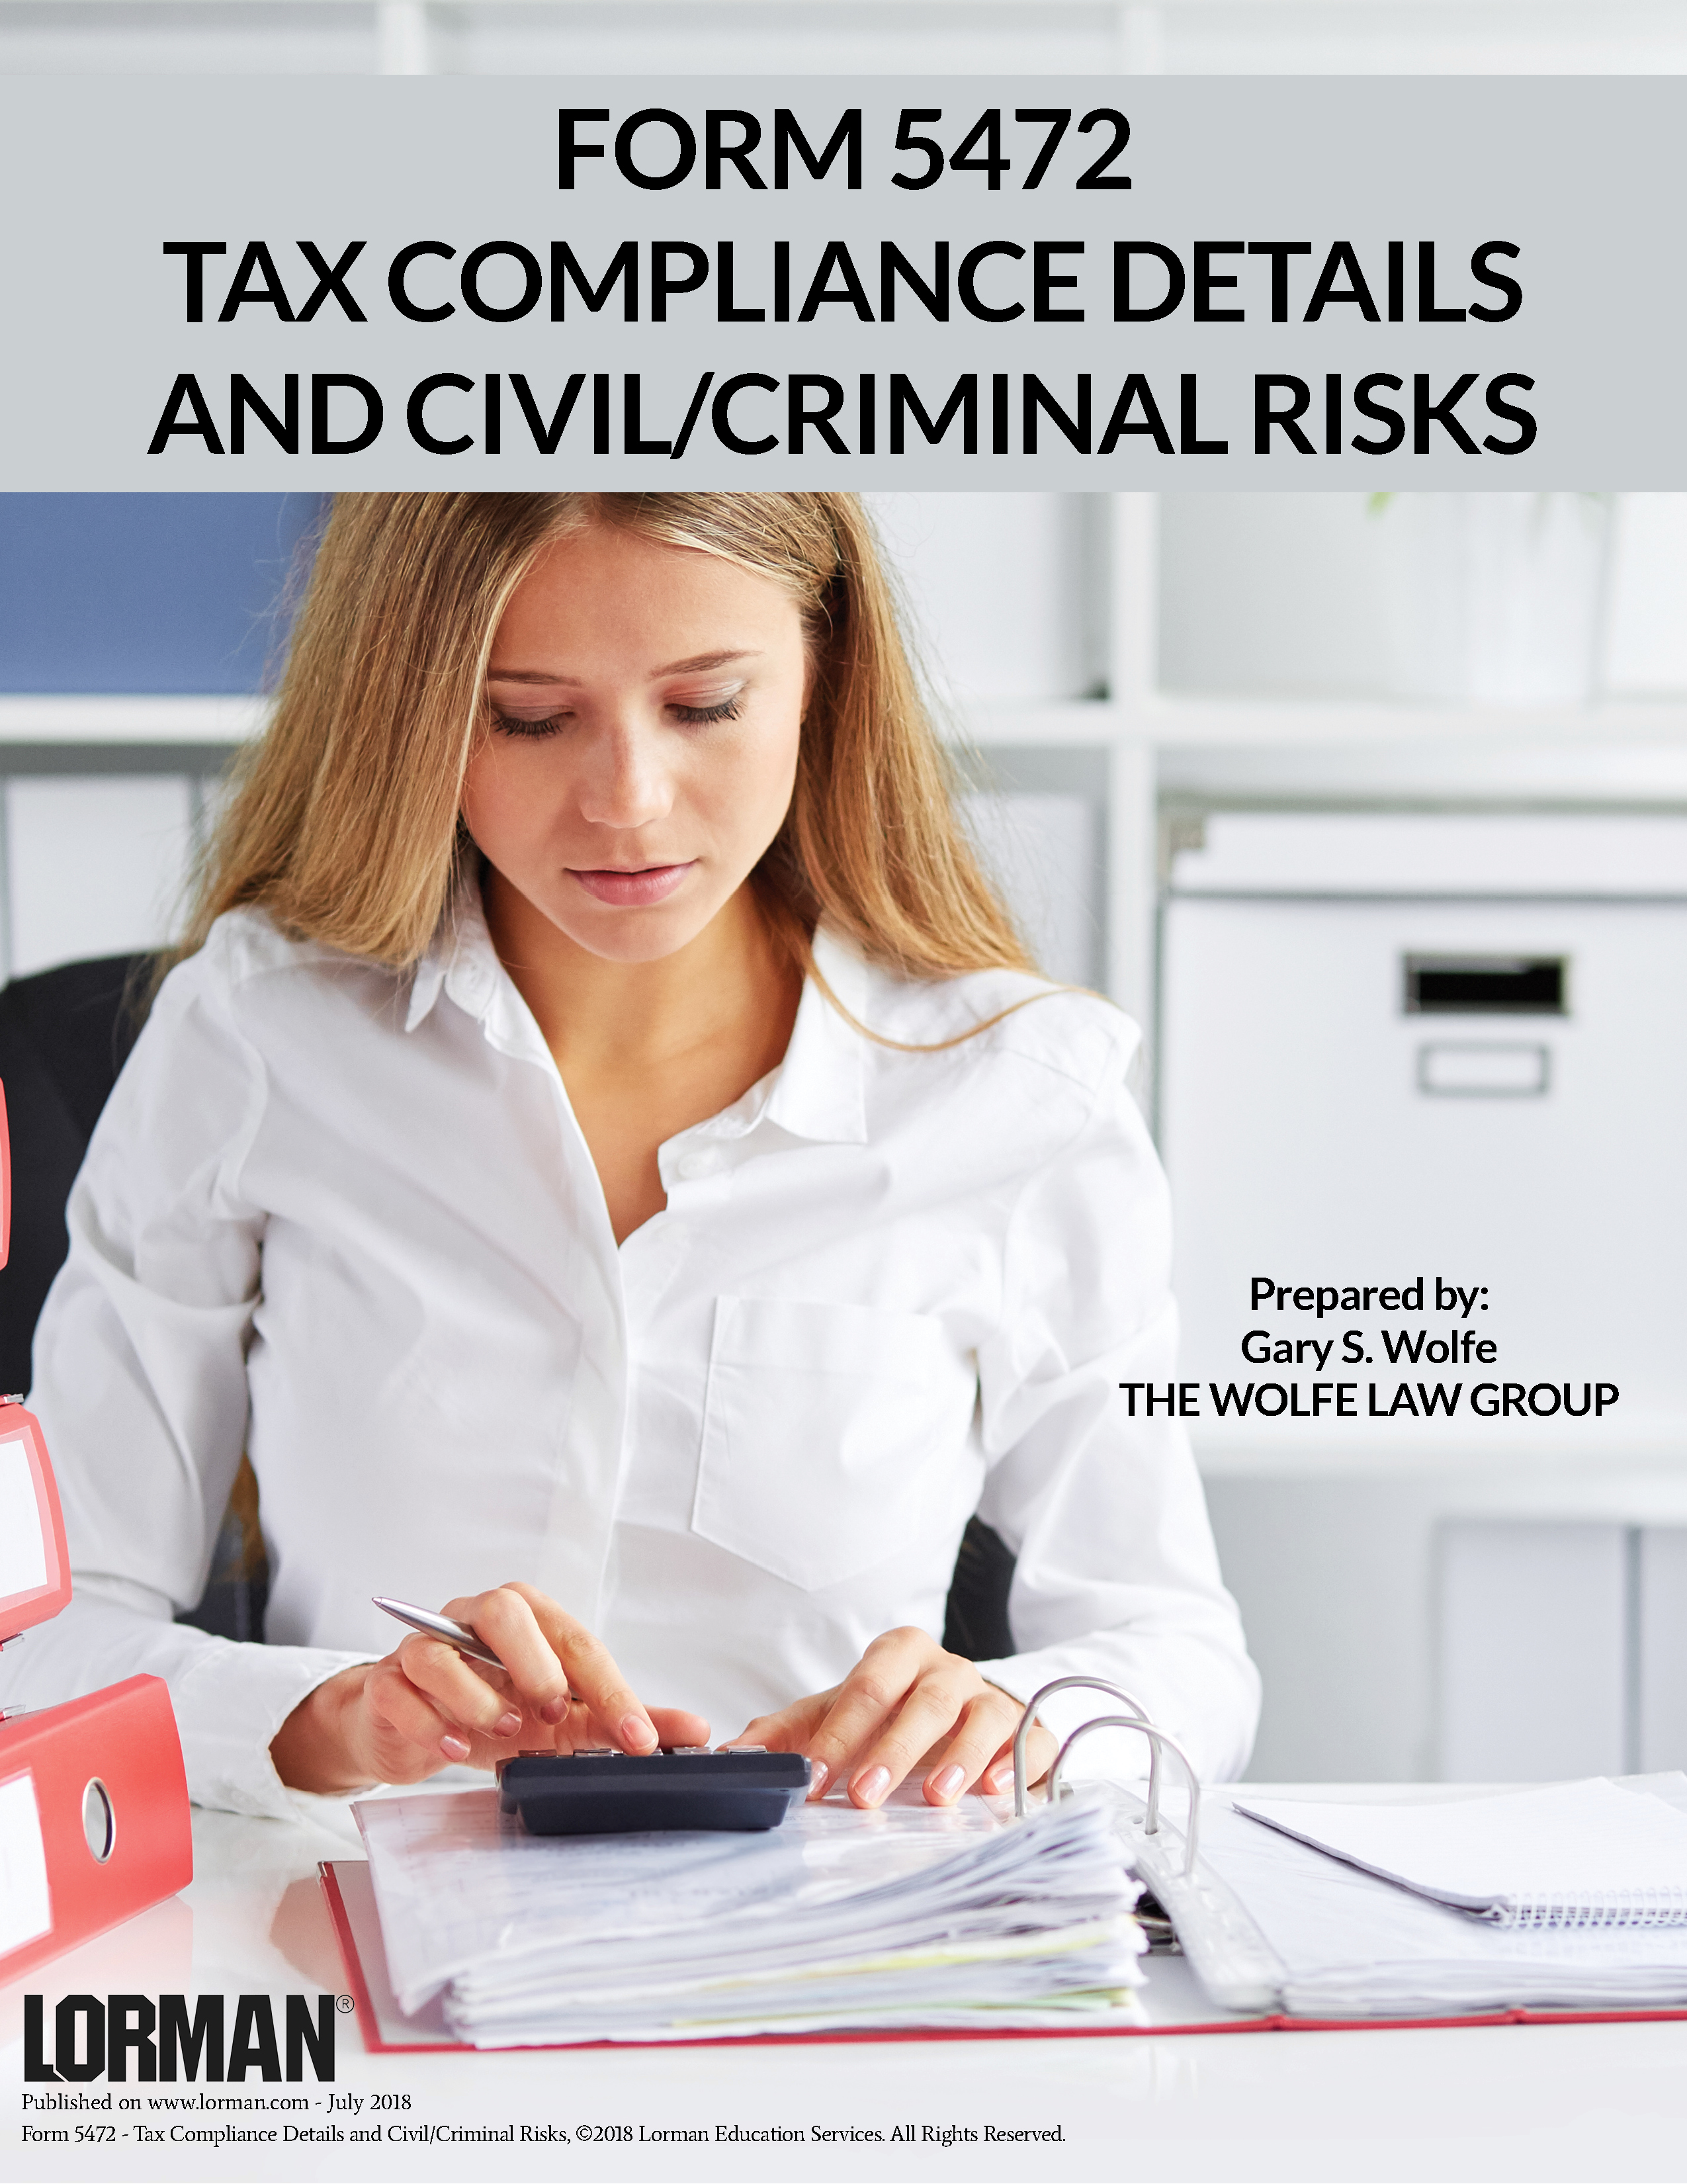 Form 5472: Tax Compliance Details and Civil/Criminal Risks